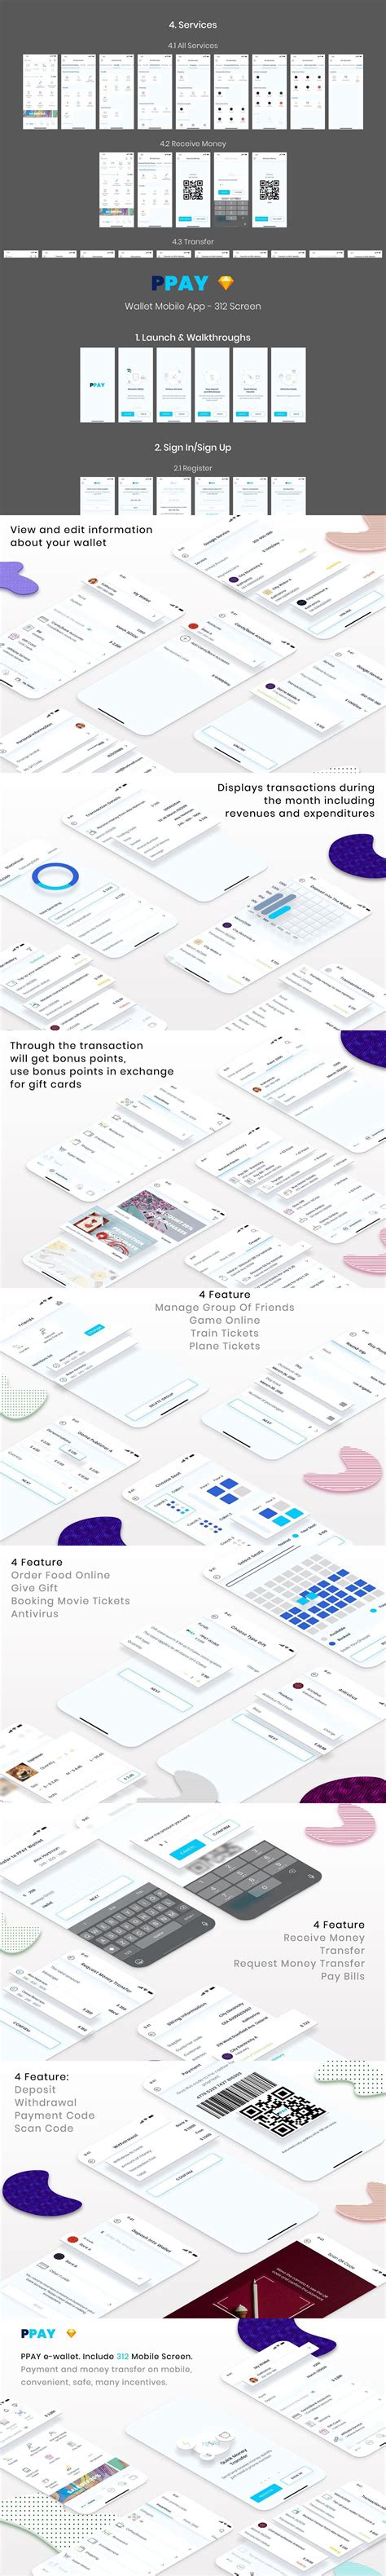 PPAY Wallet Mobile App | Mobile app, Design template, Website design